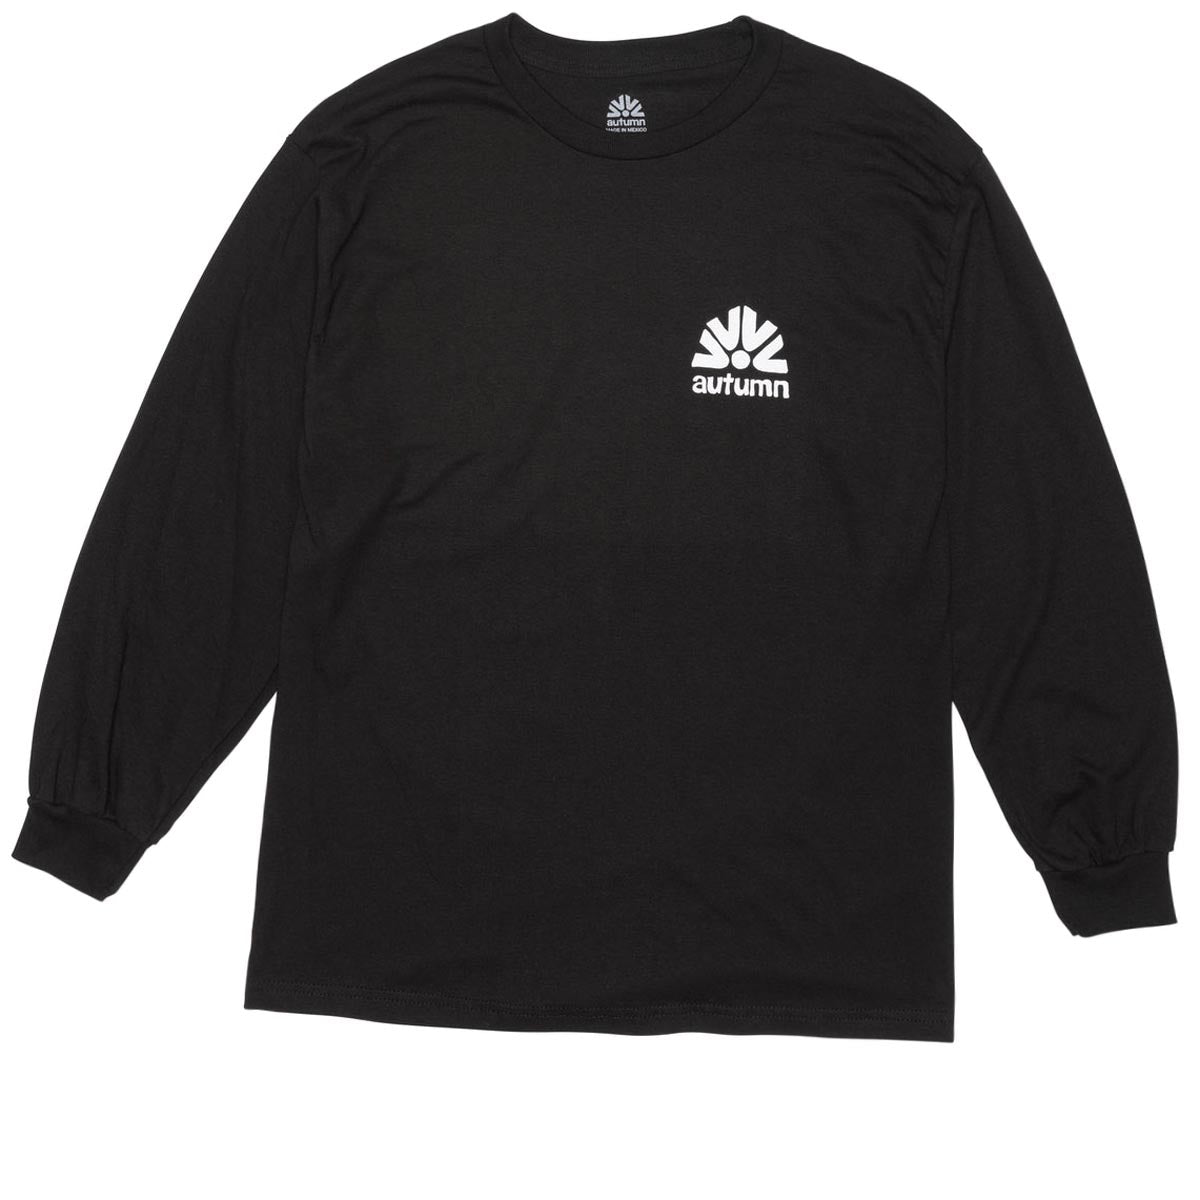 Autumn Range Long Sleeve Shirt - Black image 2